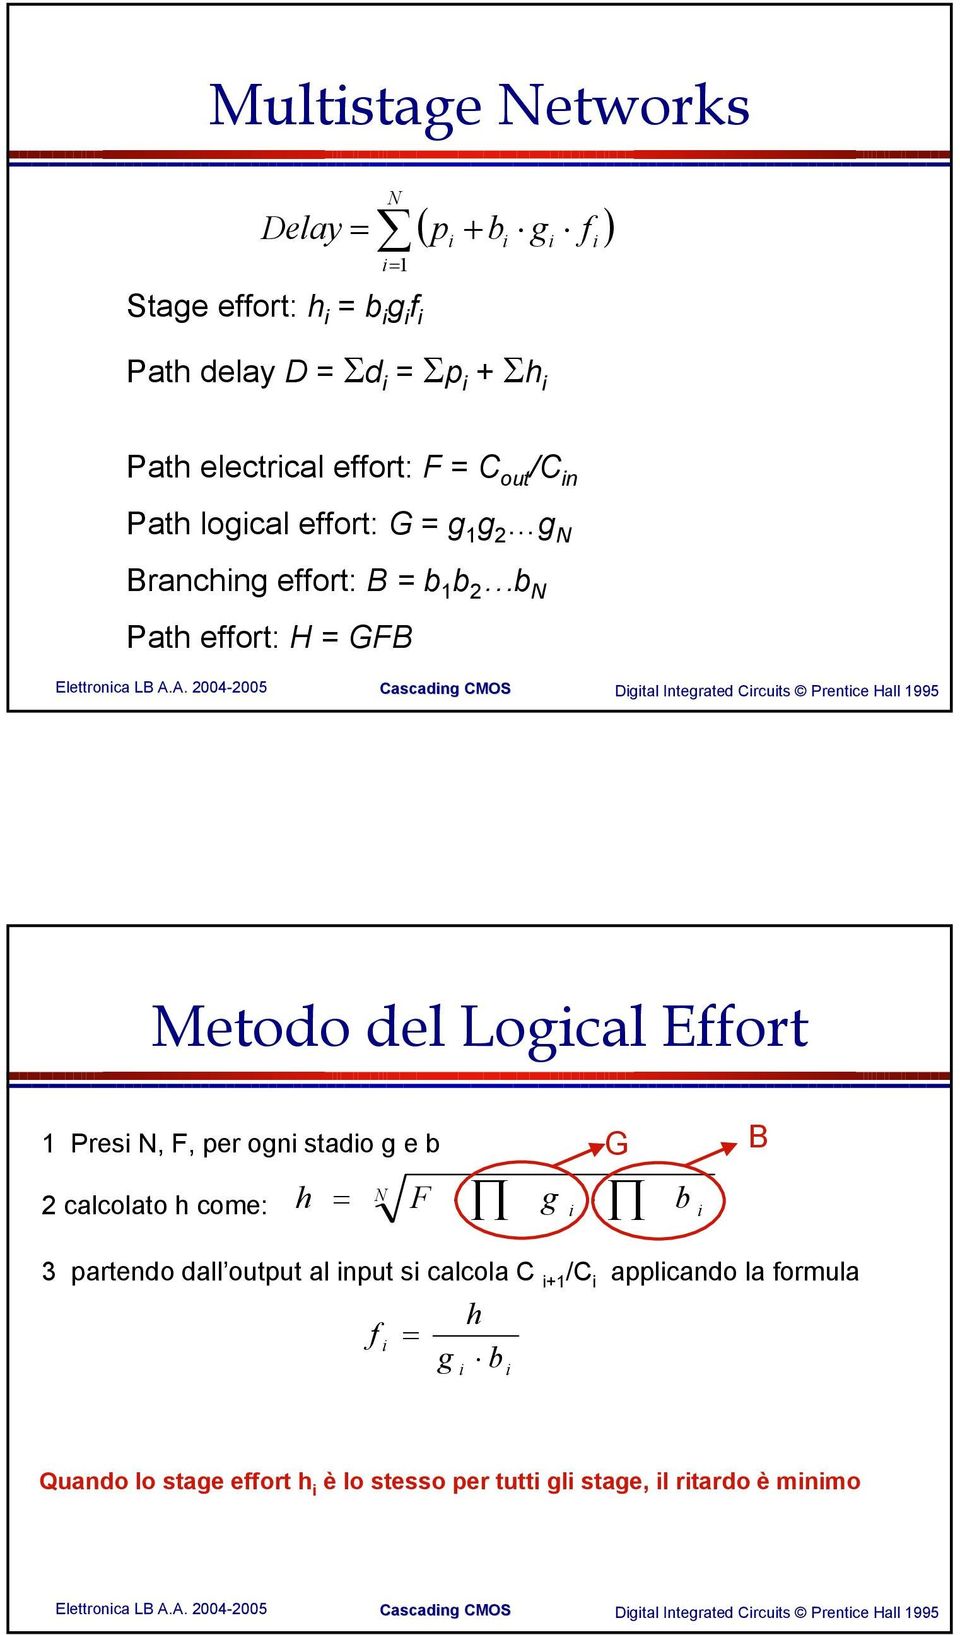 Meodo del Logcal Effor 1 Pres N, F, er ogn sado g e b G 2 calcolao h come: h = N F g b B 3 arendo dall ouu